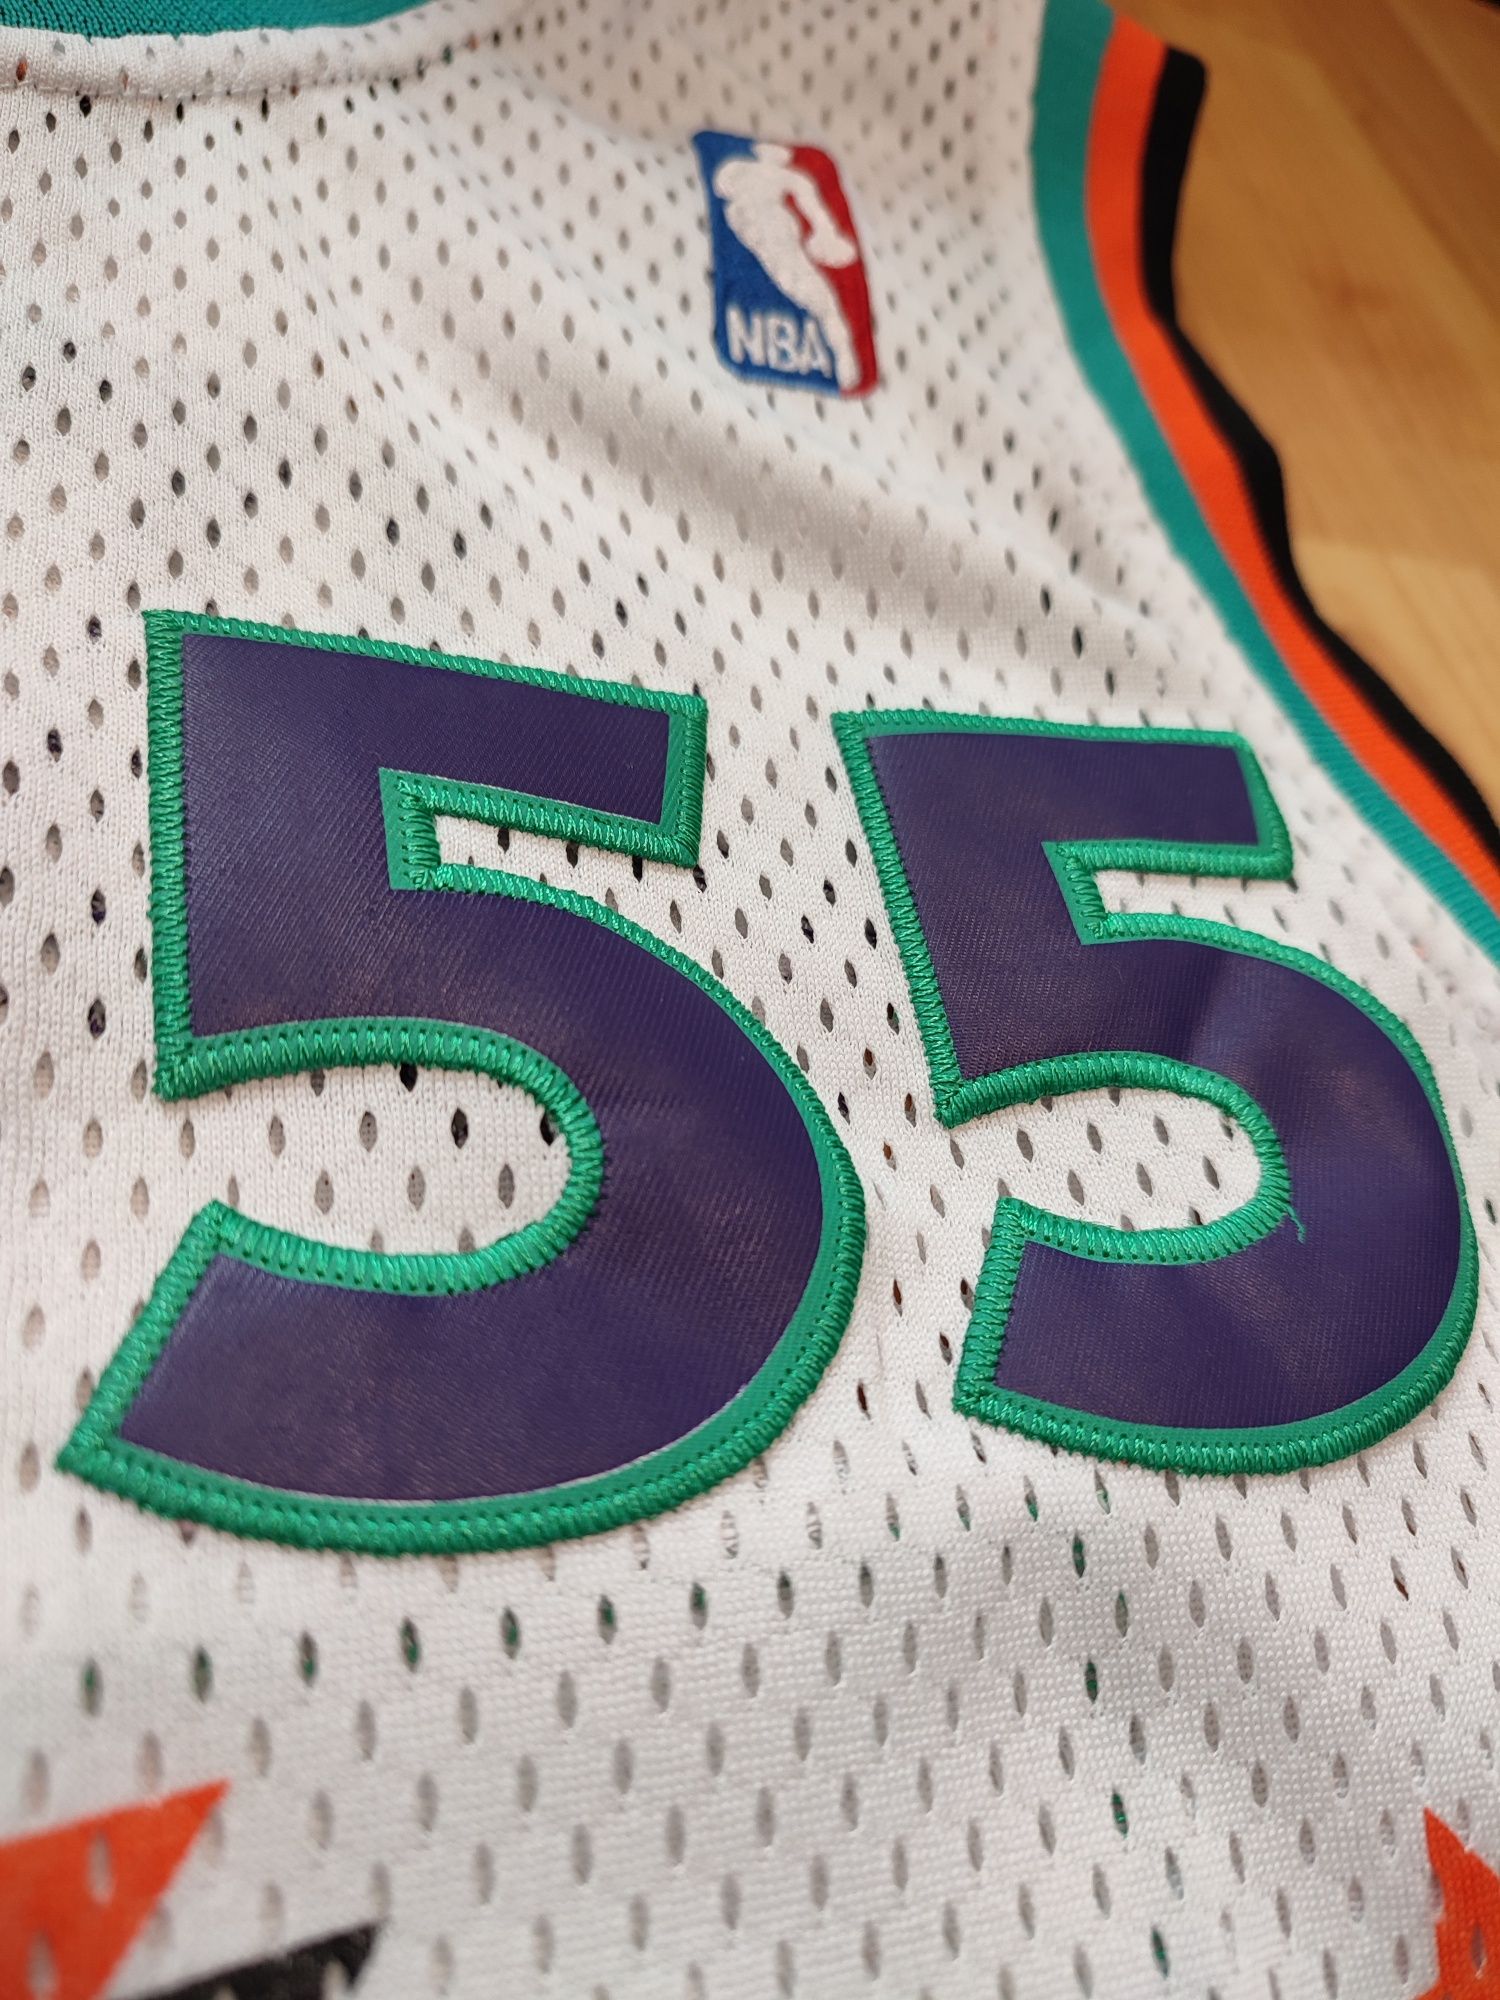 Koszulka NBA Adidas Mutombo All Star